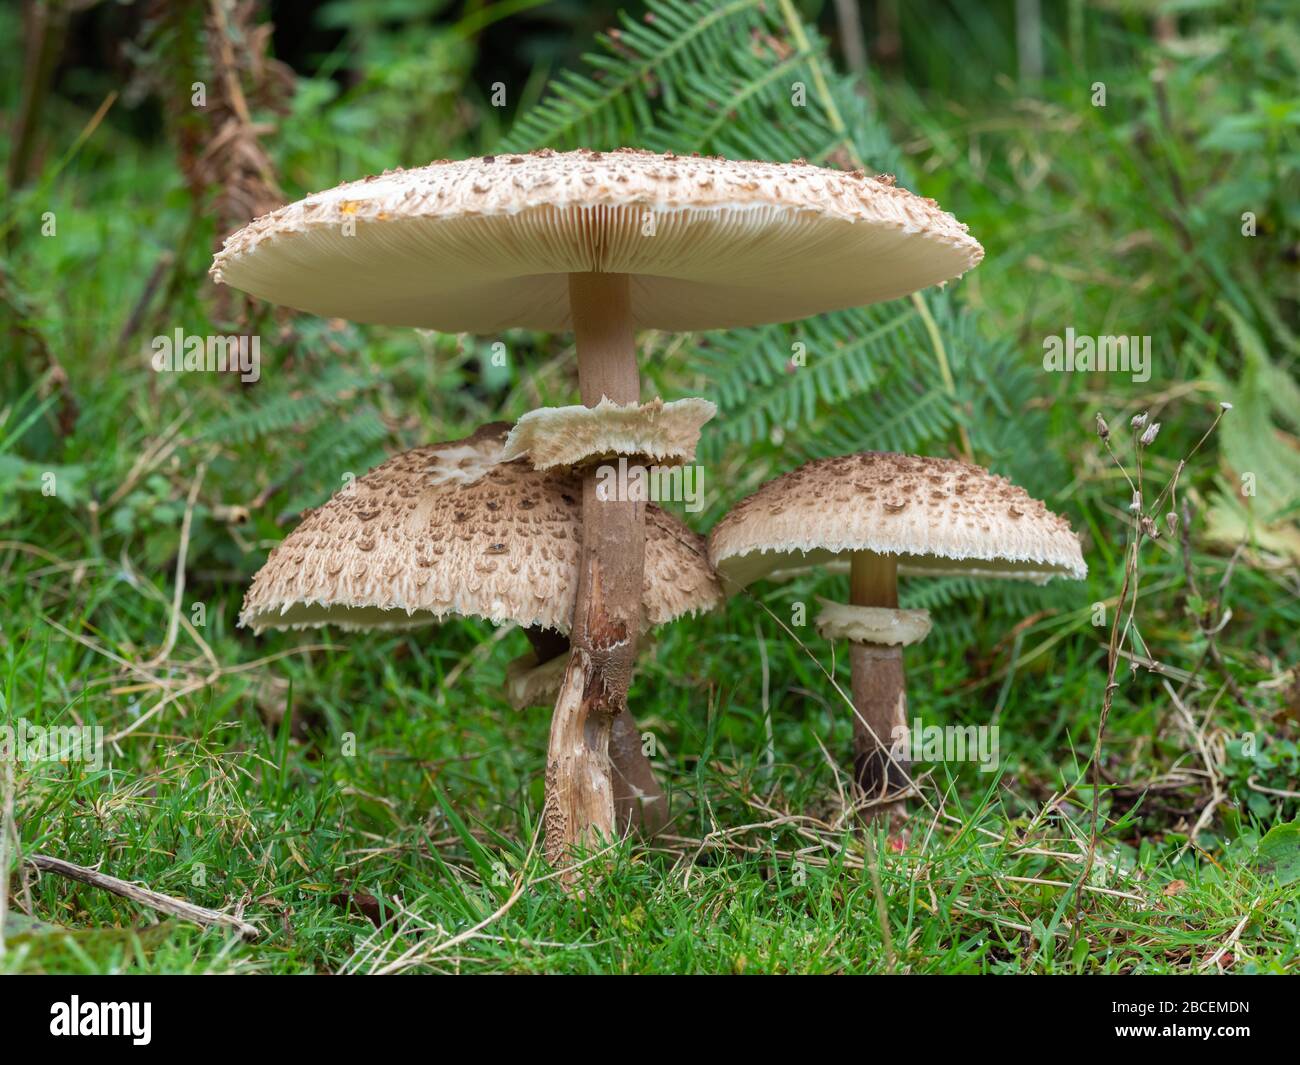 Shaggy Parasol Mushroom in a Meadow, Chlorophyllum rhacodes Stock Photo